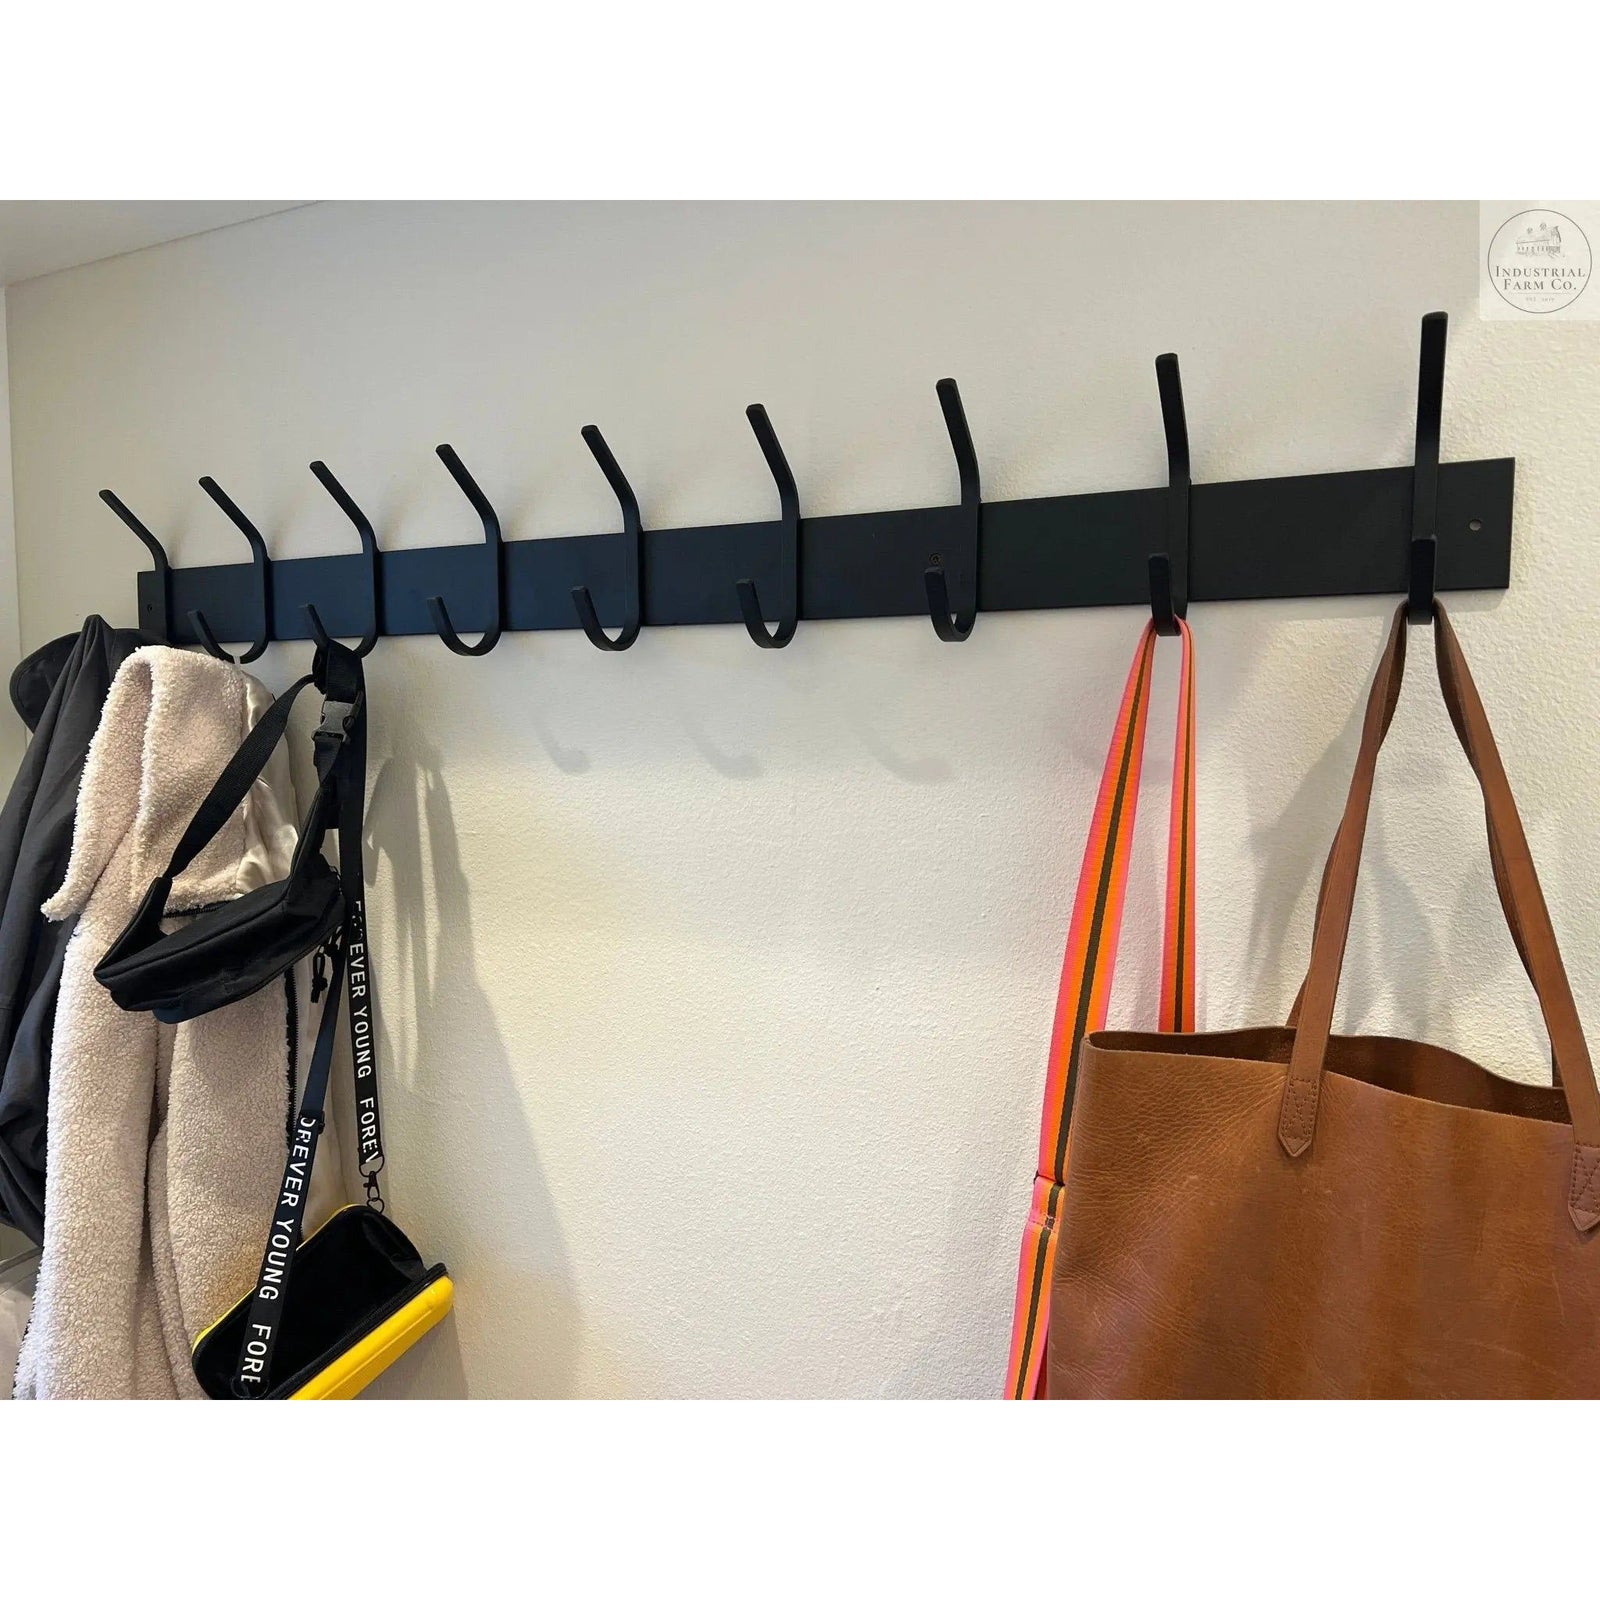 Shop Coat Racks, Hooks, and Hangers for Schools